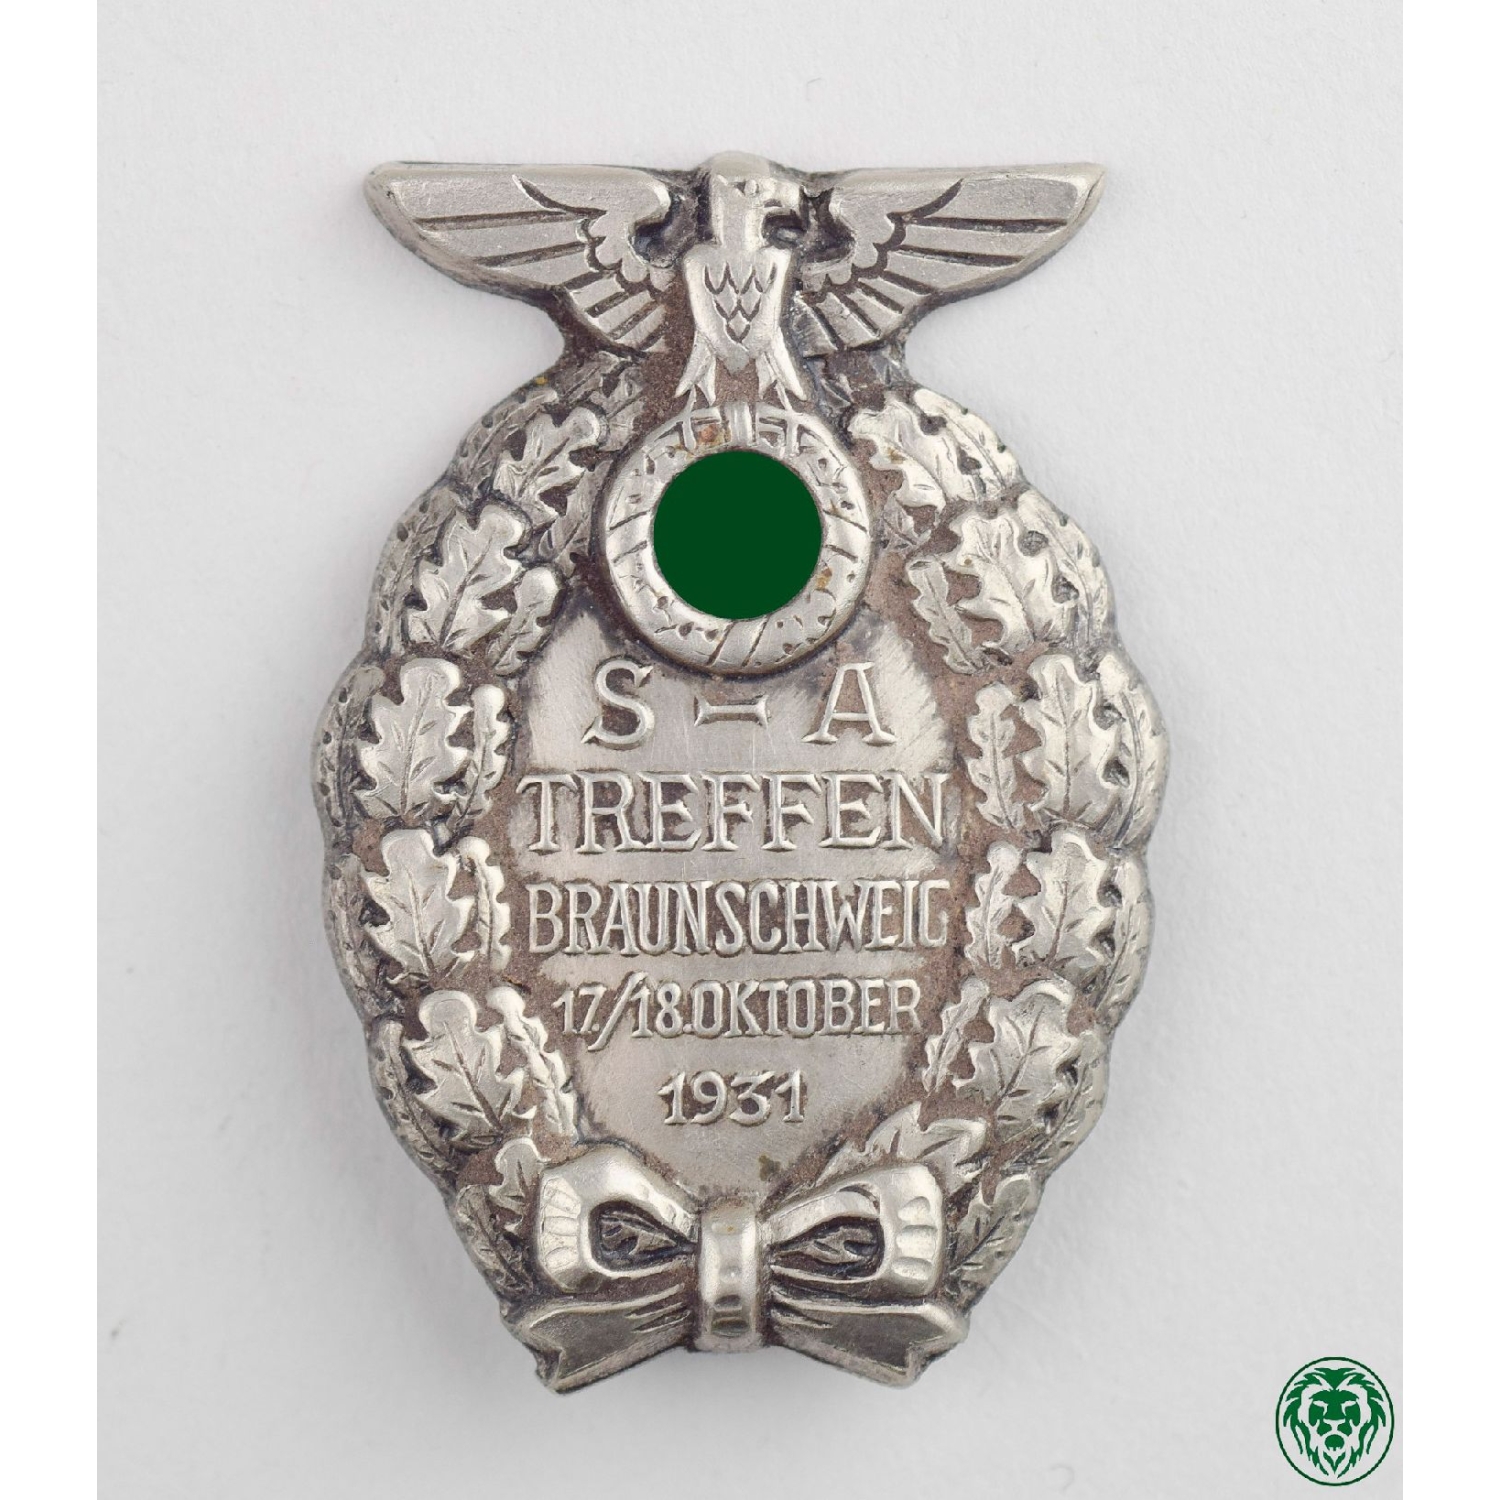 SA-Abzeichen "S-A Treffen Braunschweig 1931"